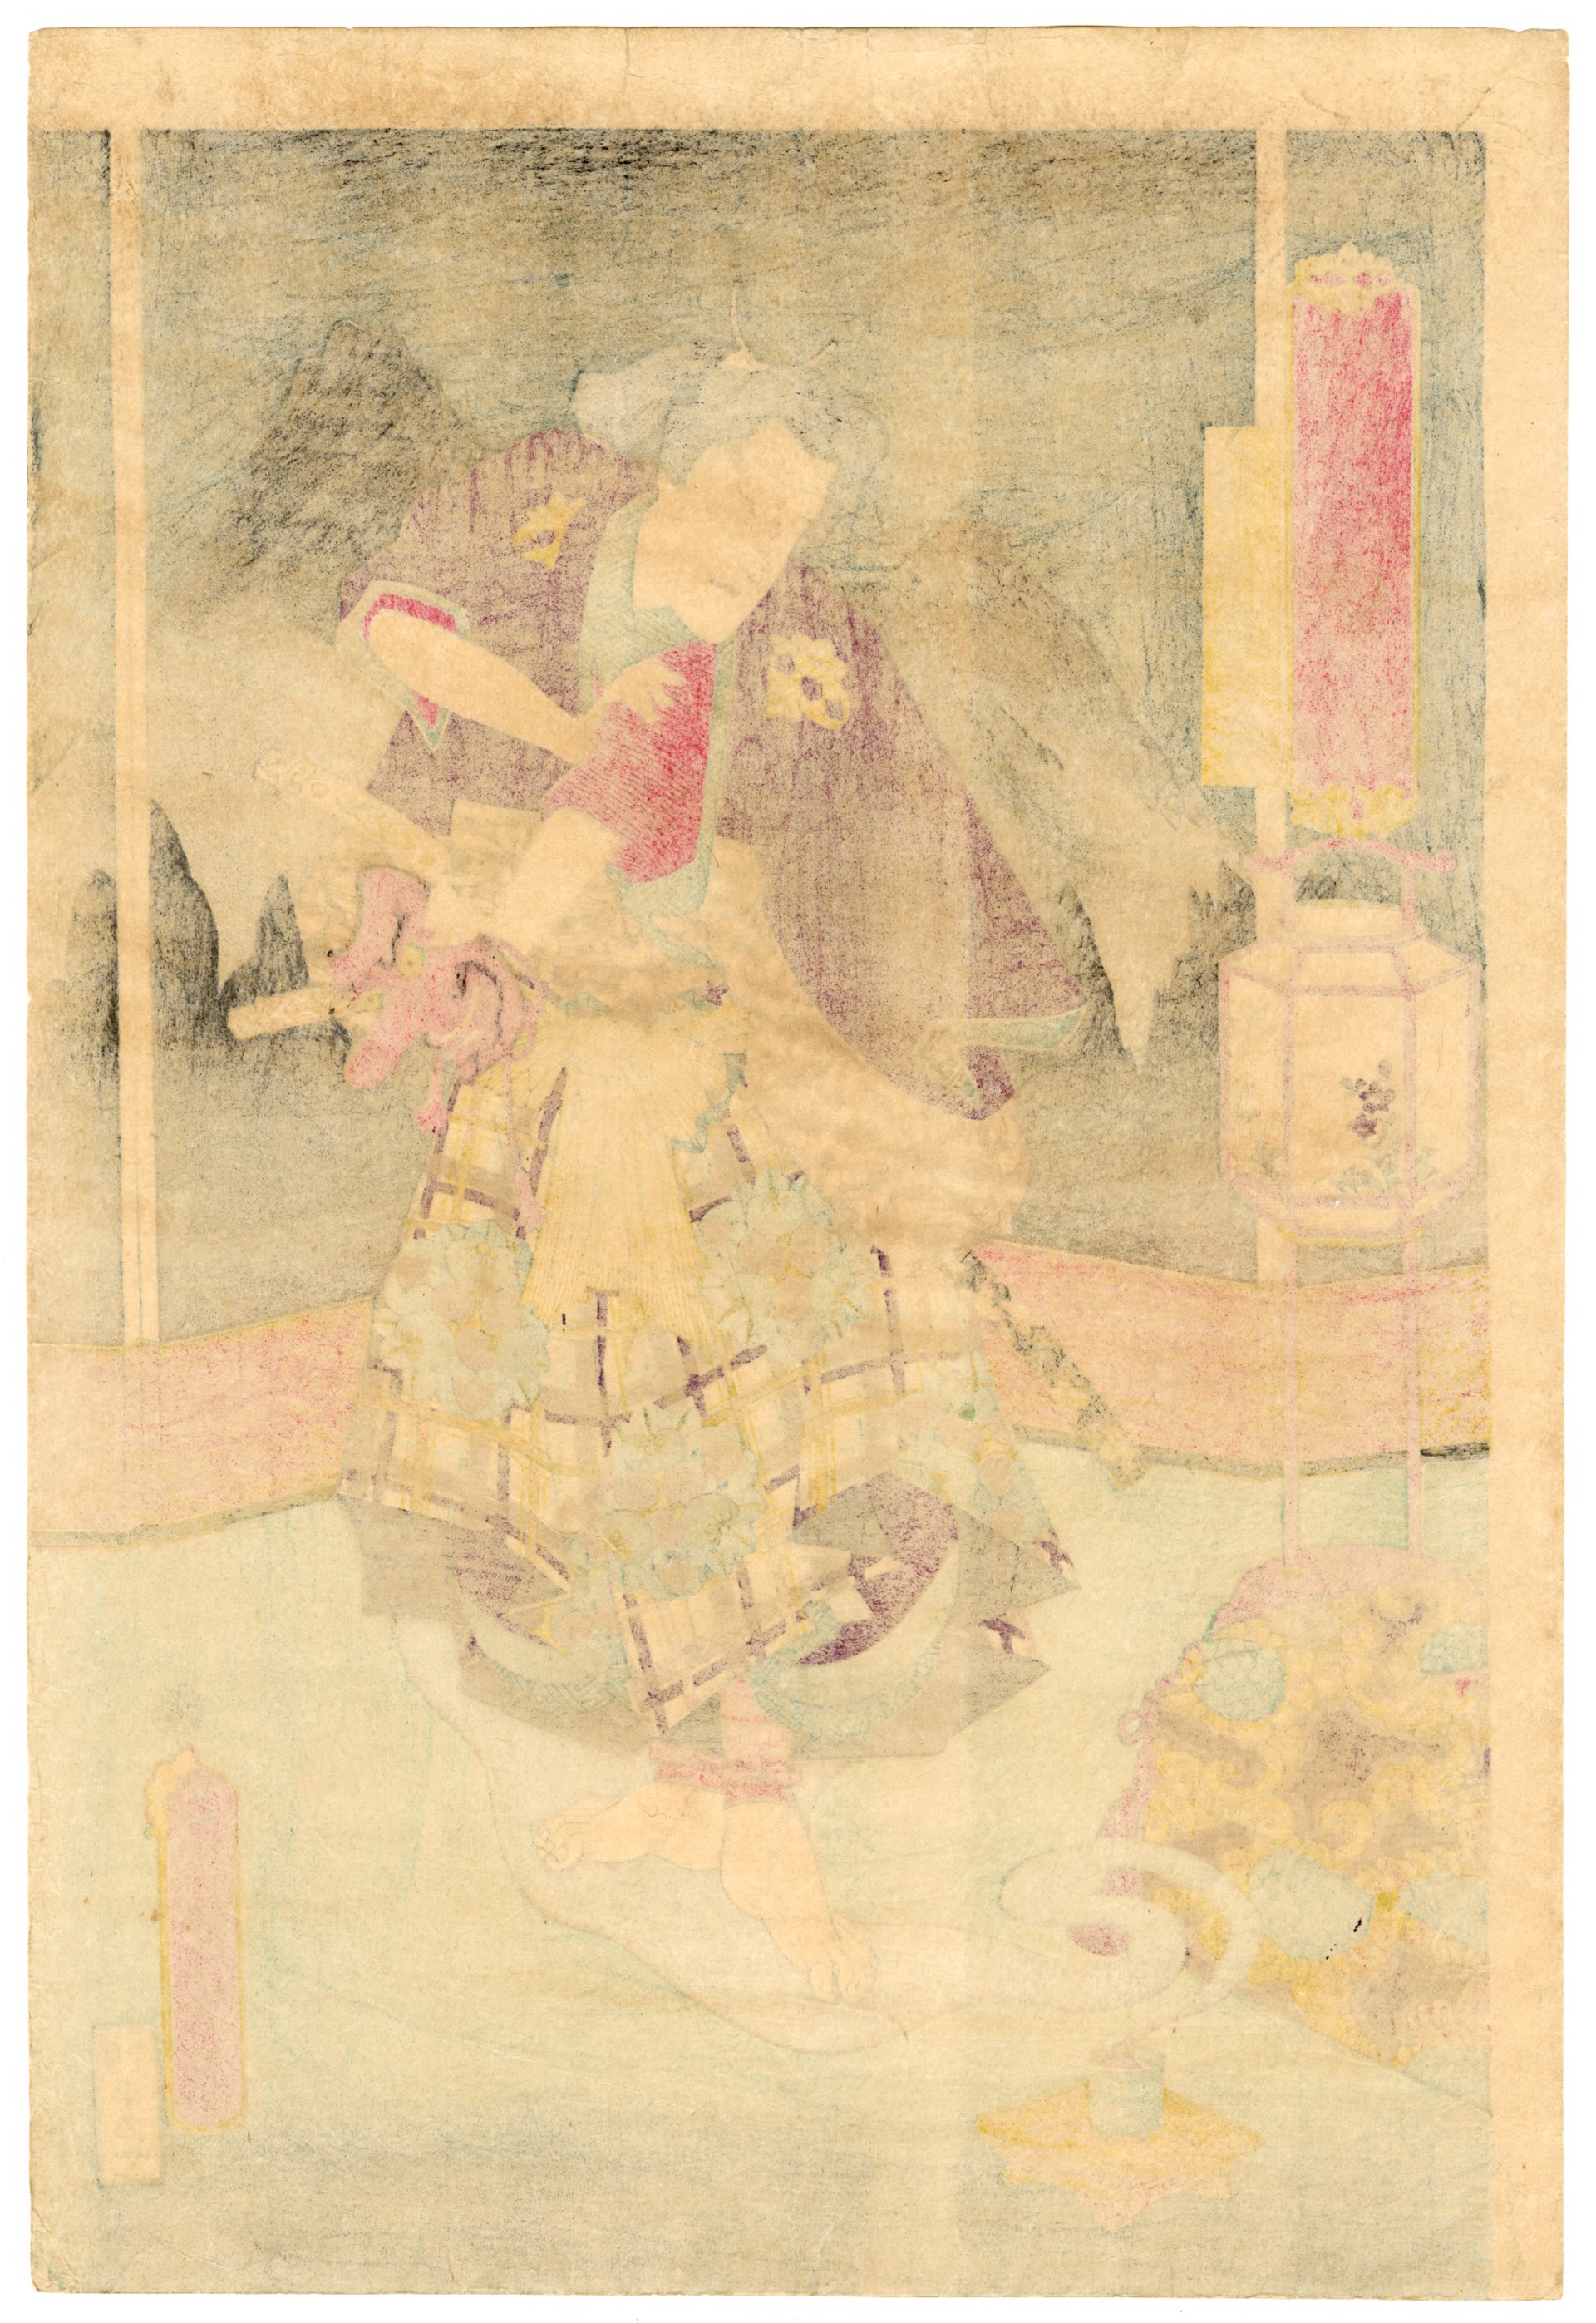 Ichimura Utaemon VIII as Tengukozo Kiritaro by Kunisada